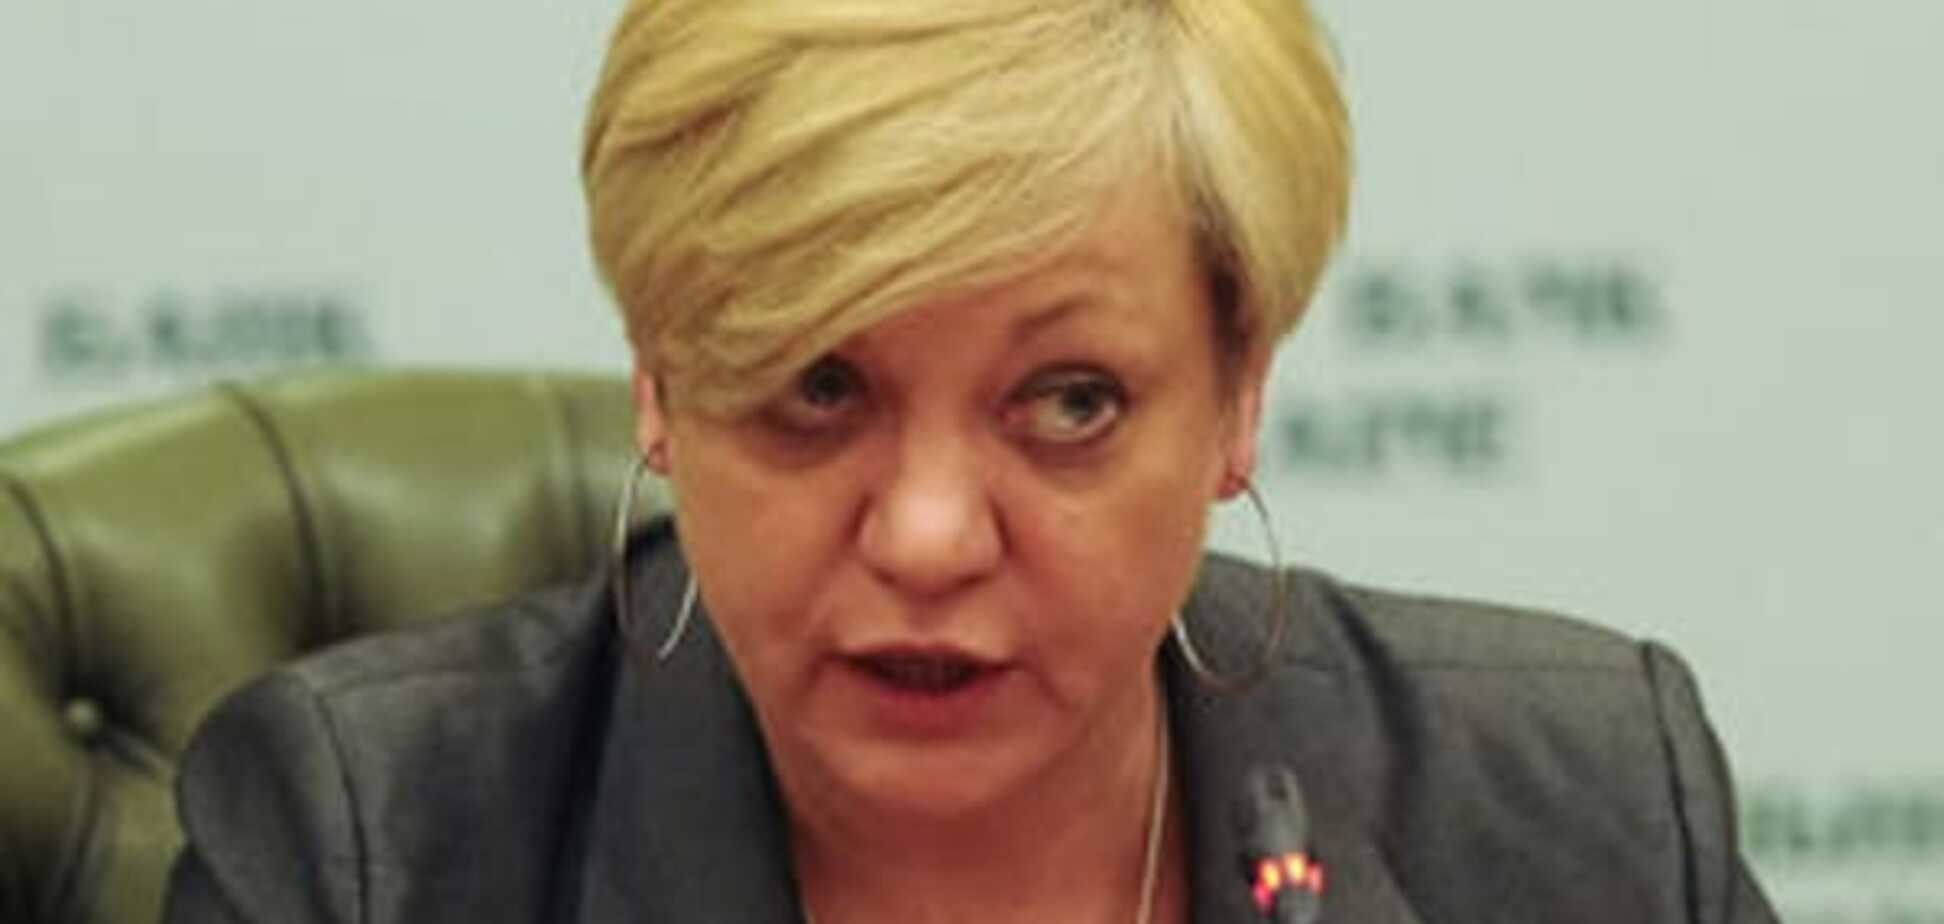 Гонтарева призналась, что для нее реформы закончились